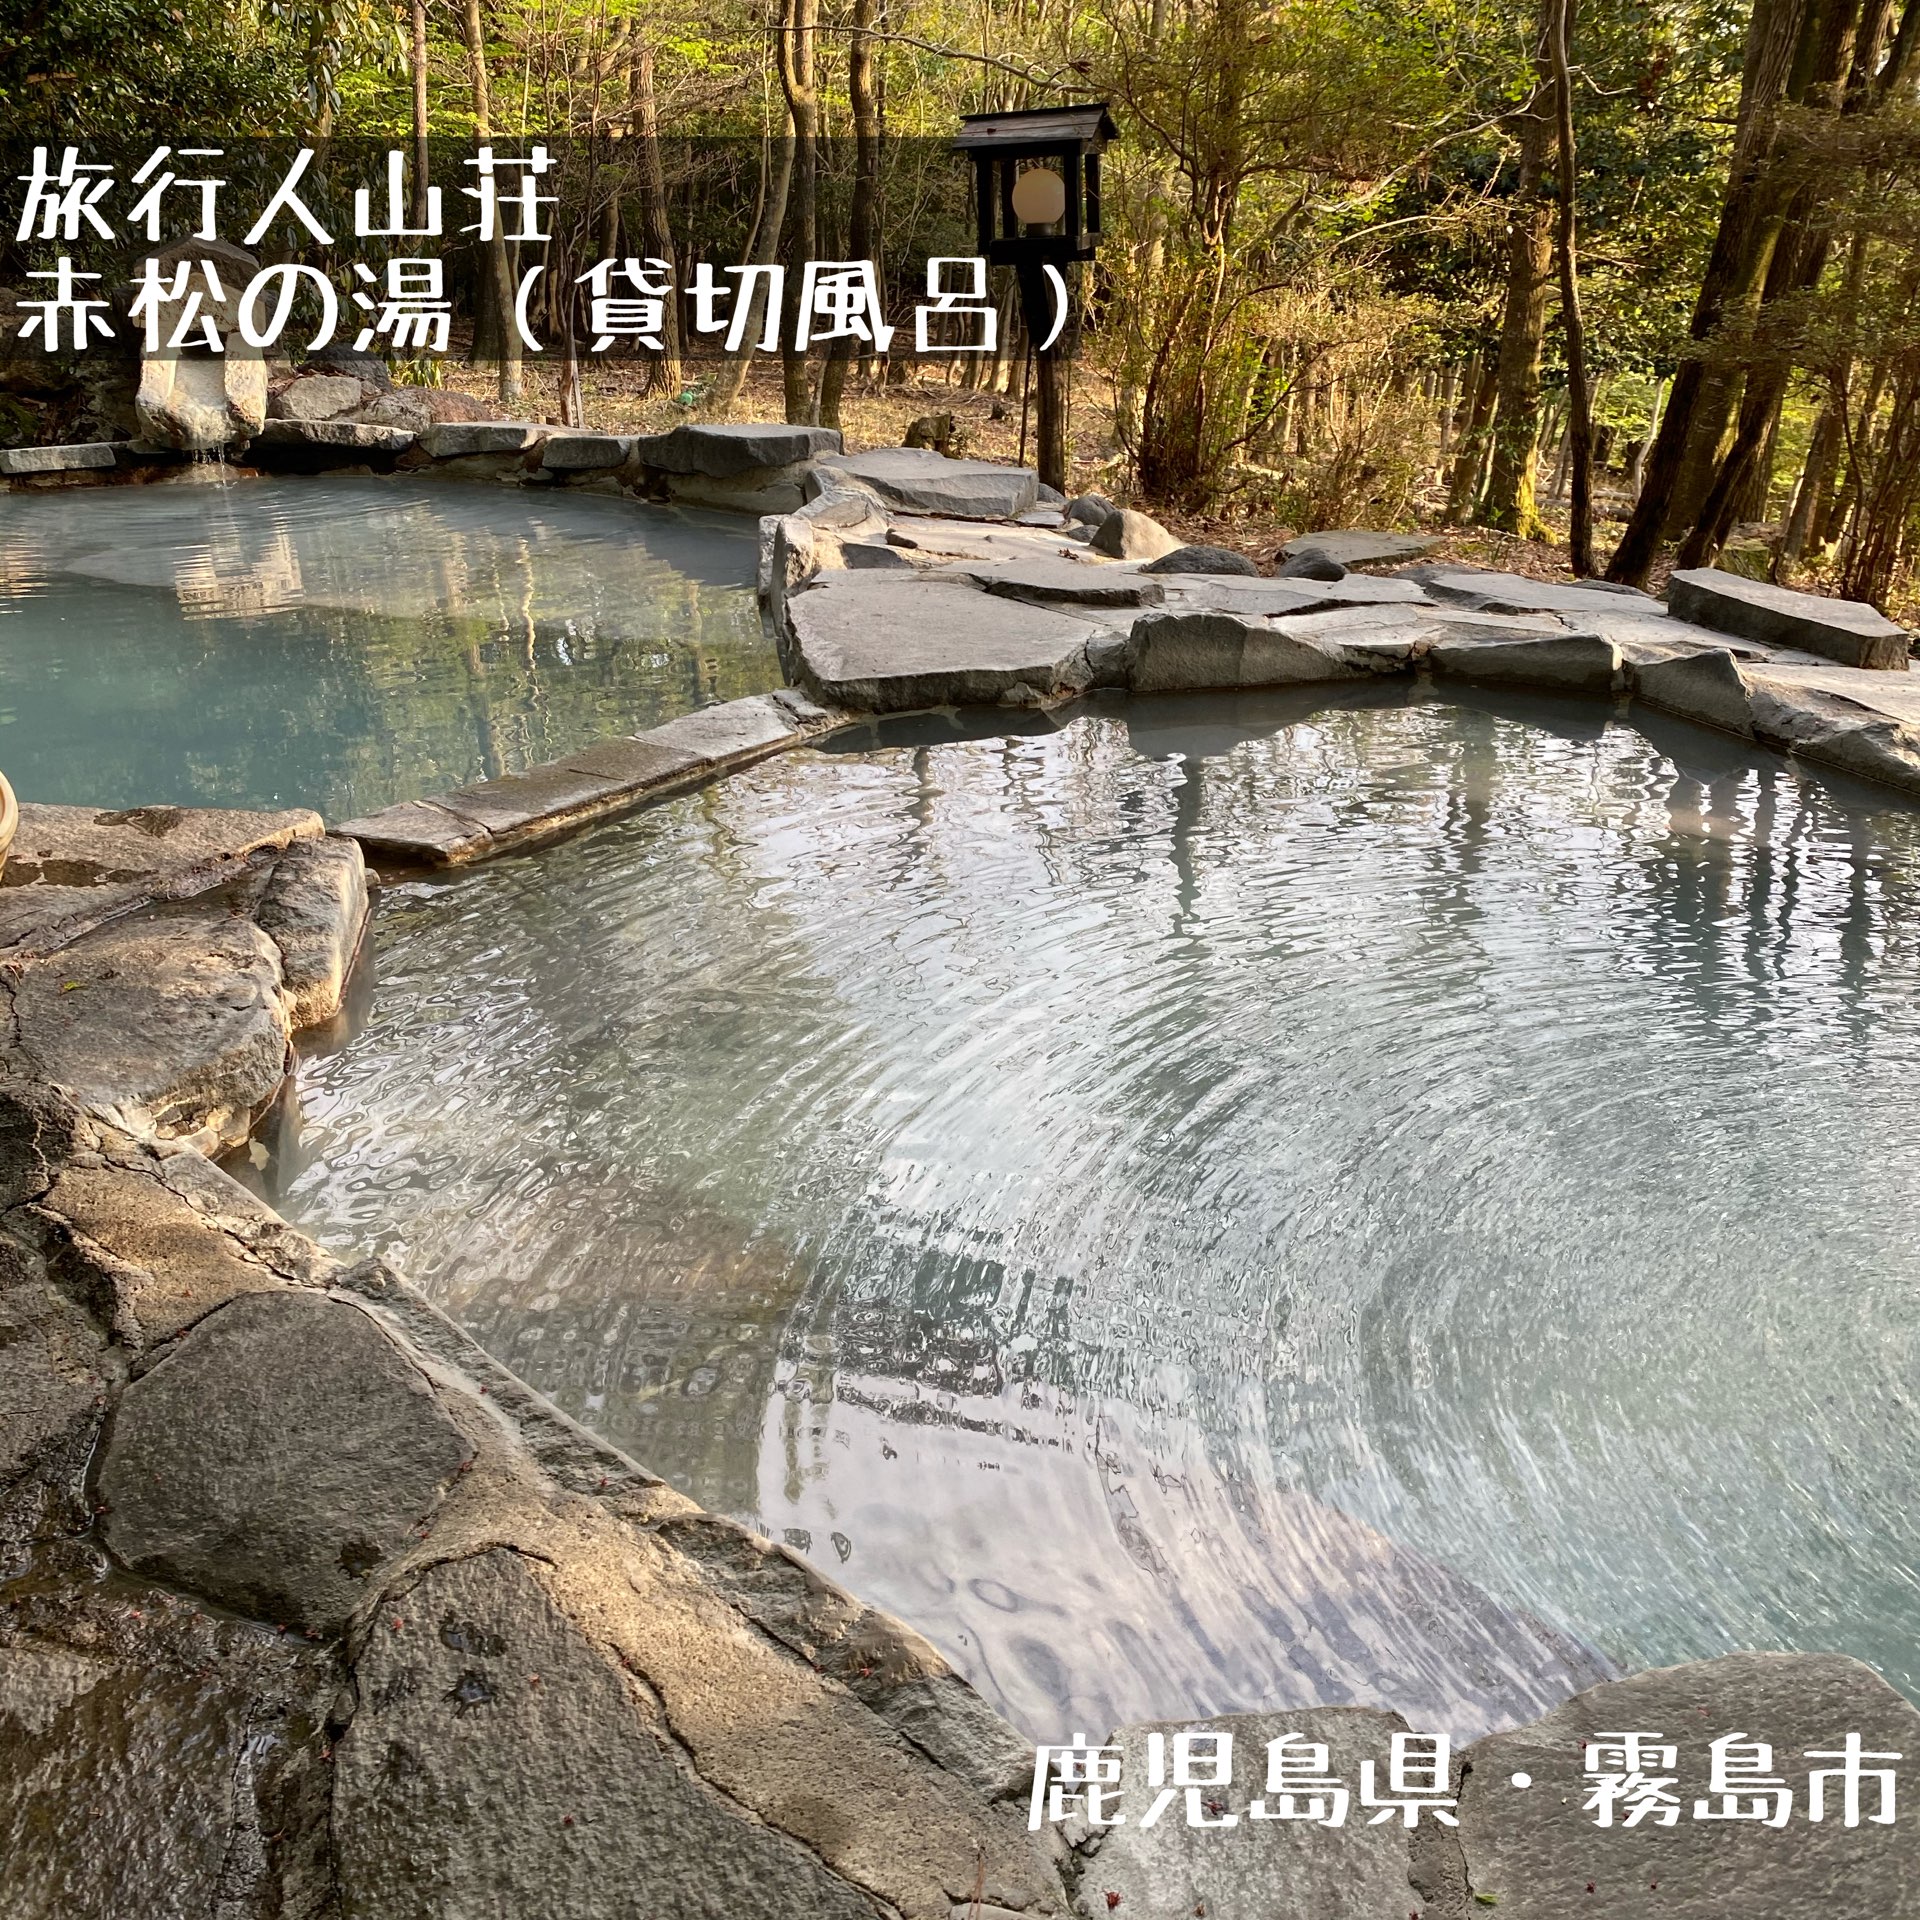 鹿儿岛县旅行人山庄的包租浴池“赤松之汤”在大自然中